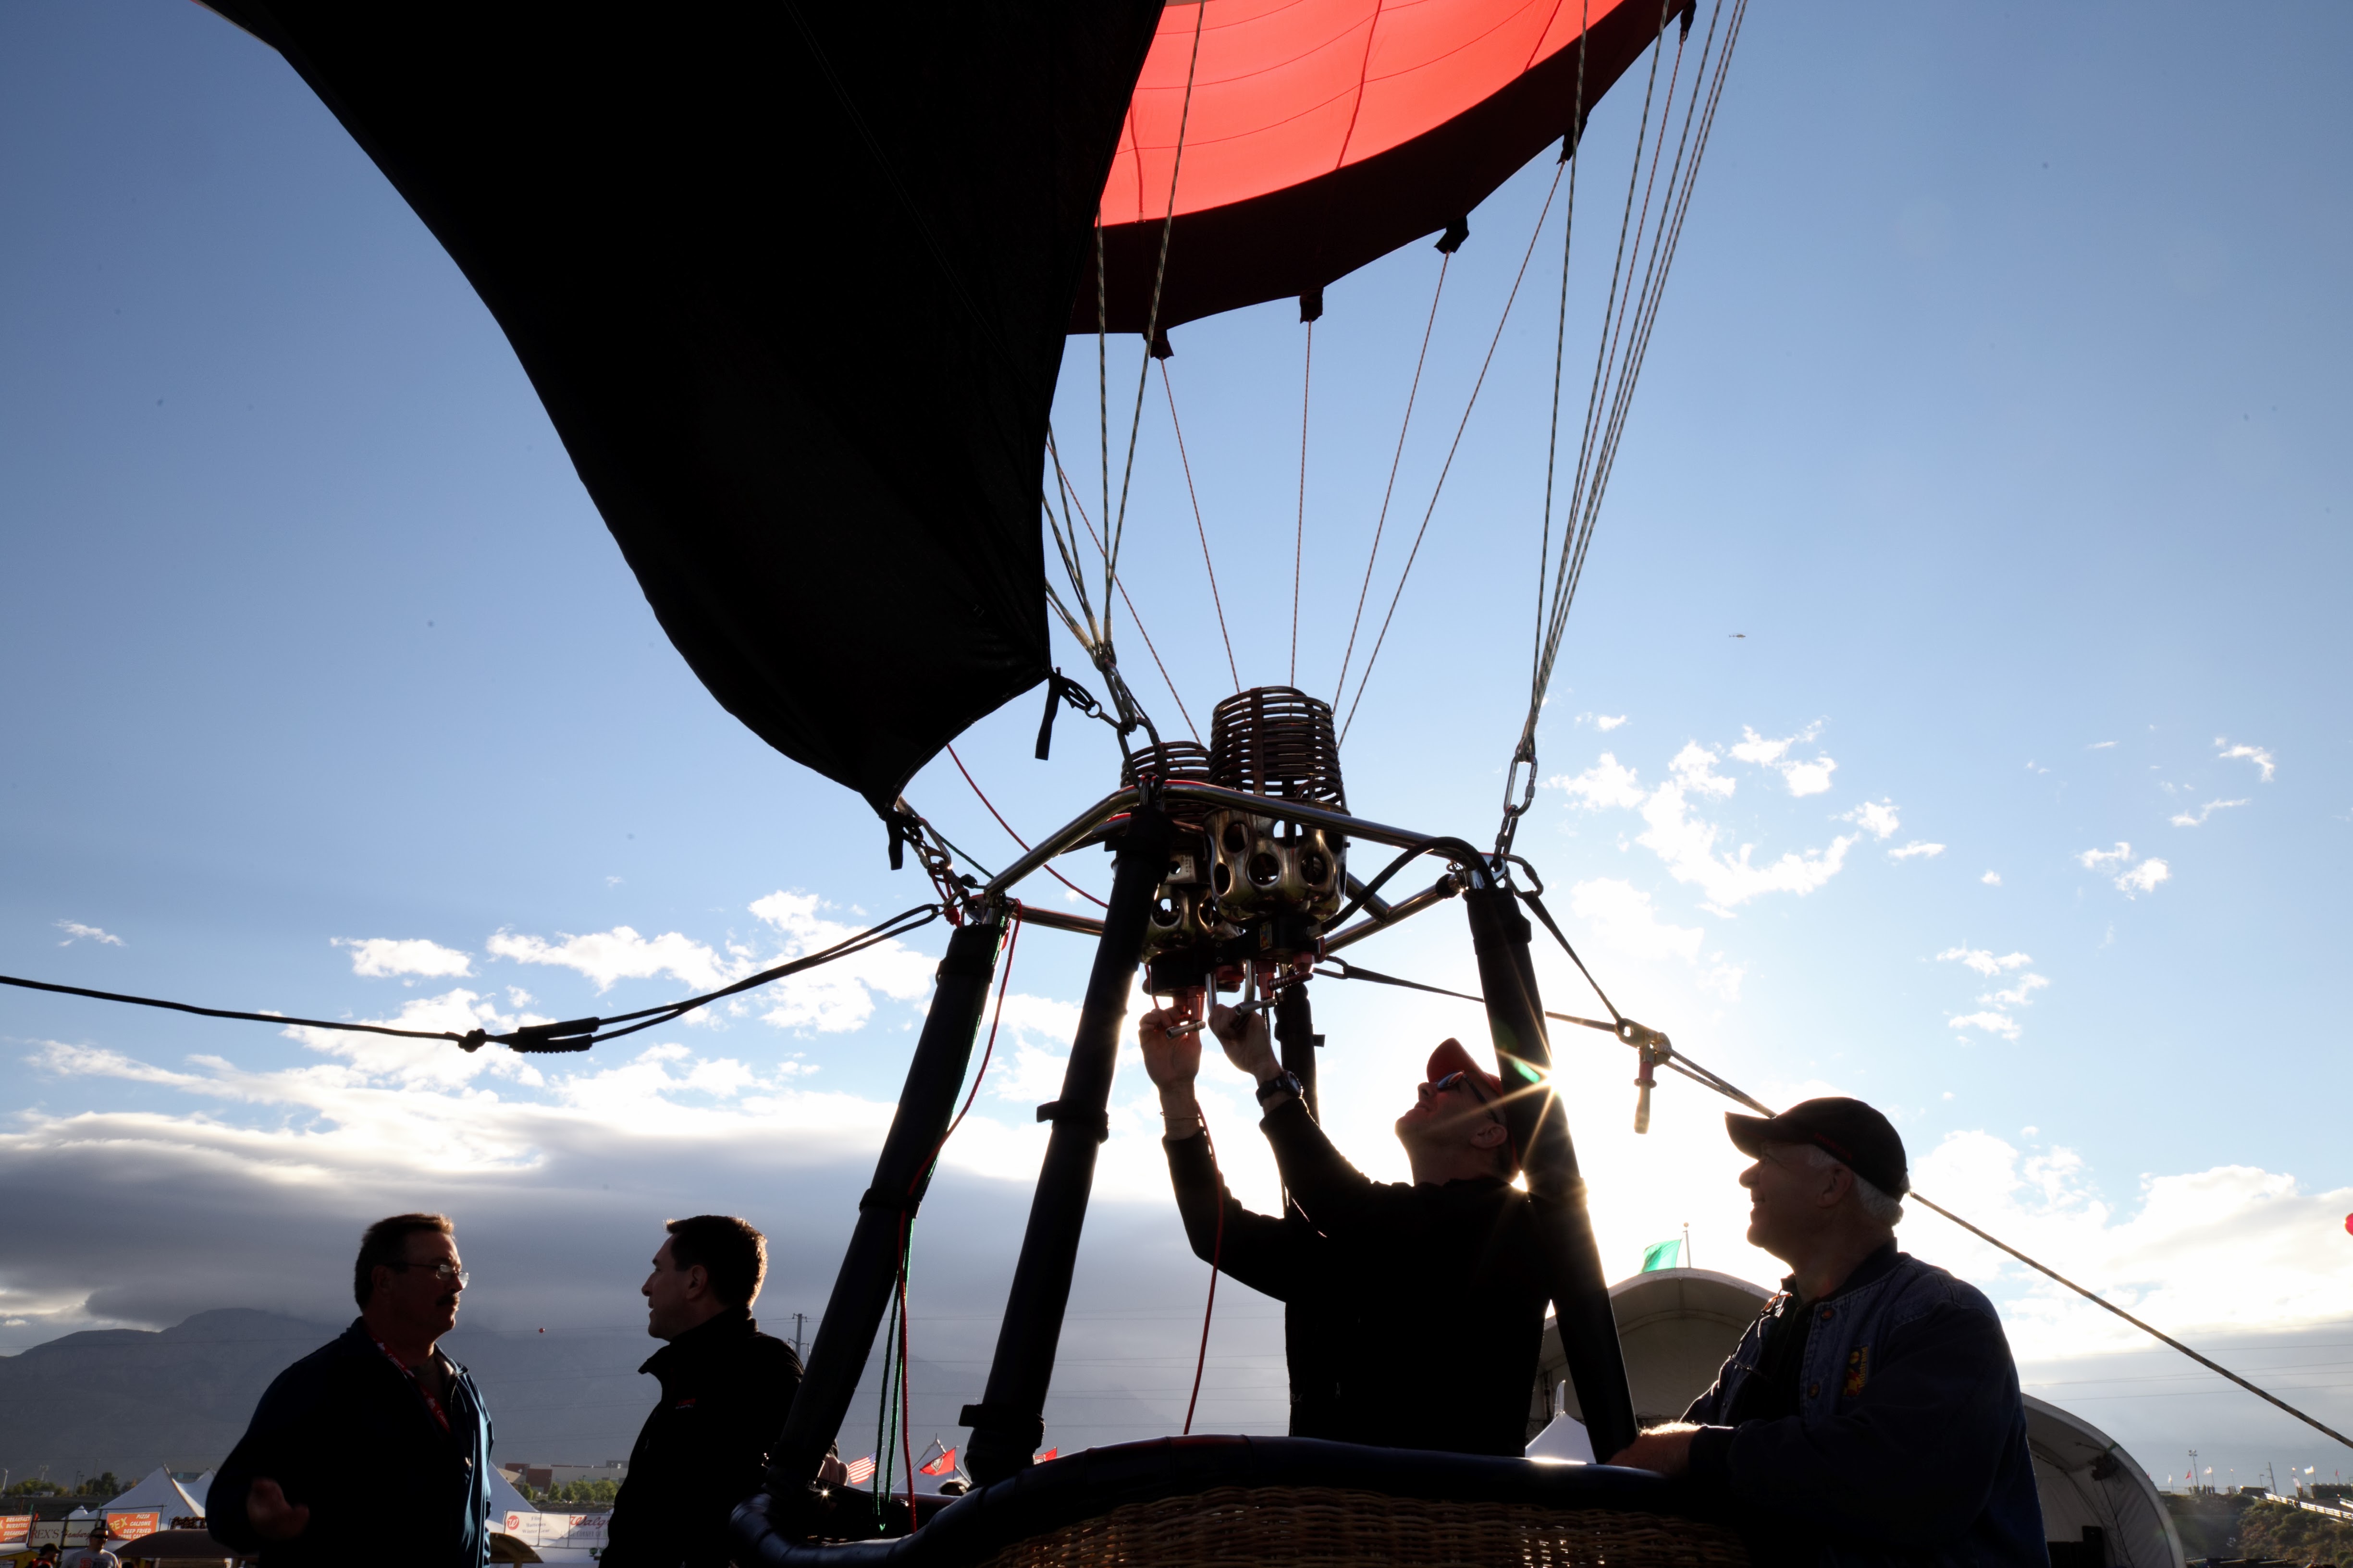 Balloon pilot preparing to take off